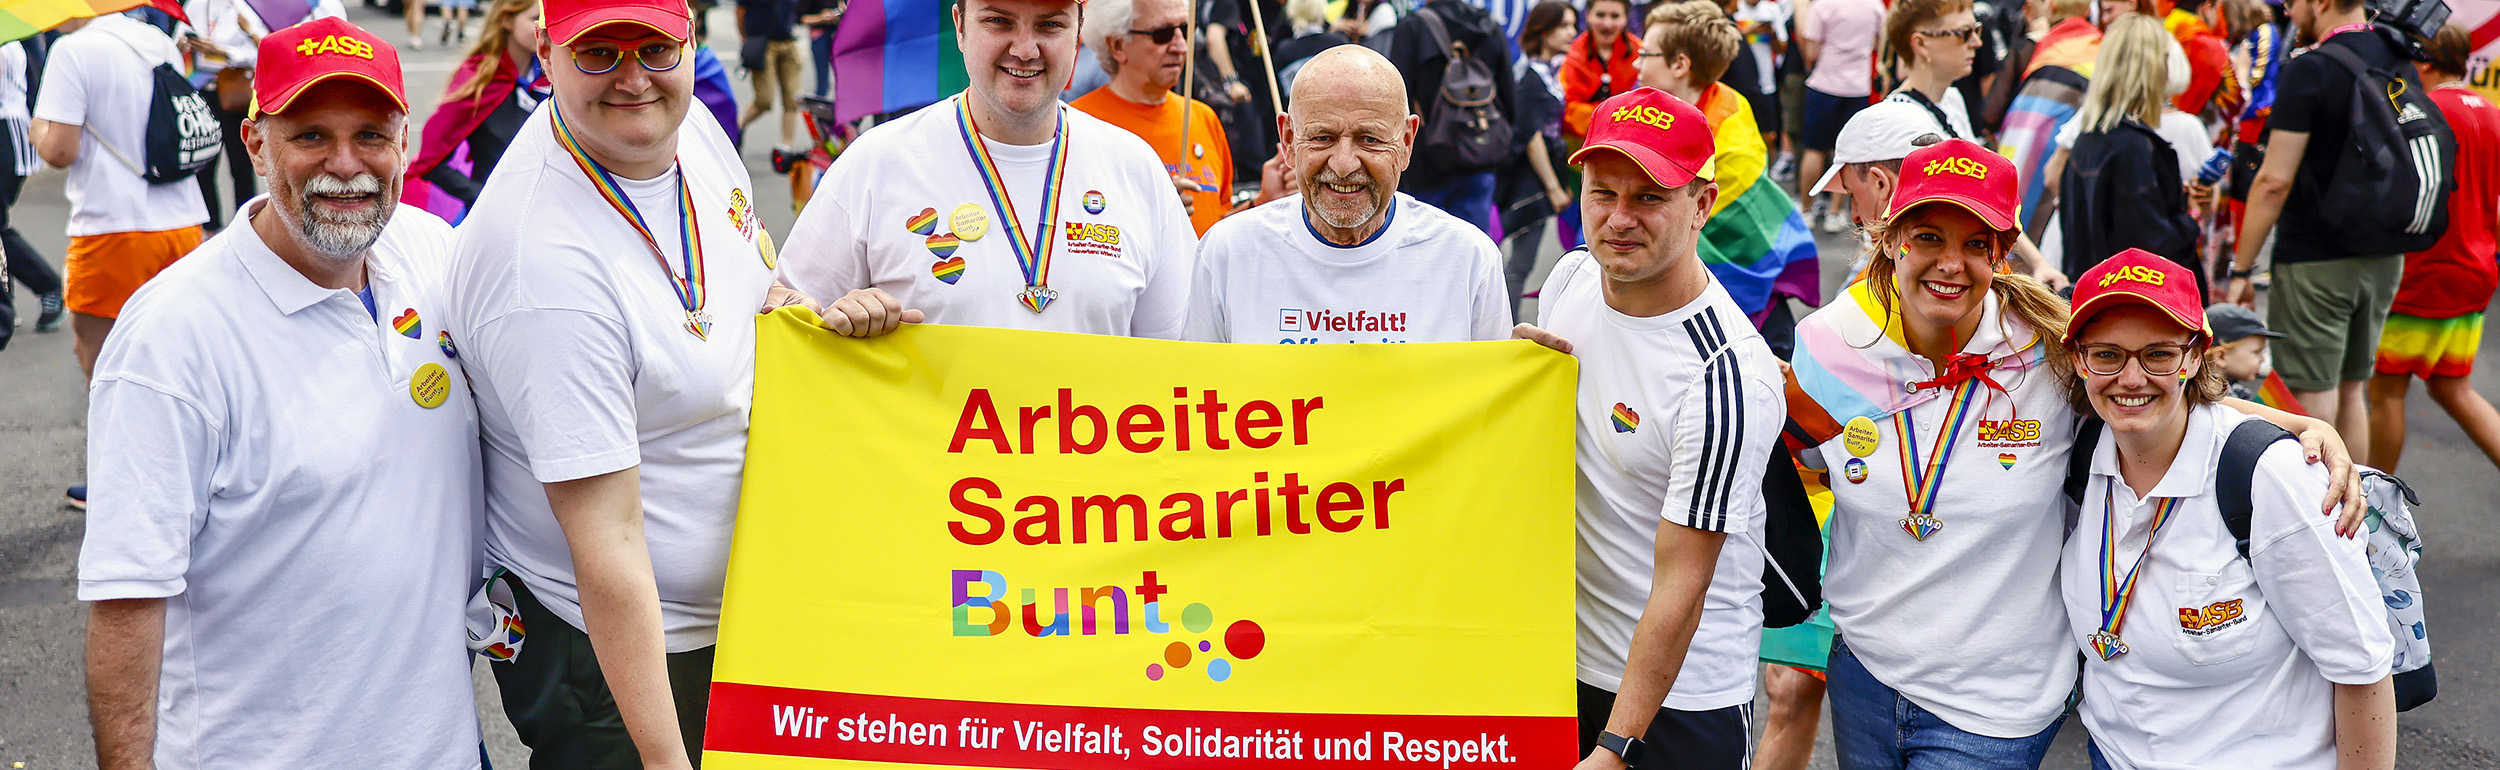 Samariter:innen beim CSD 2023 mit Arbeiter-Samariter-Bunt-Transparent für Vielfalt, Solidarität und Respekt.